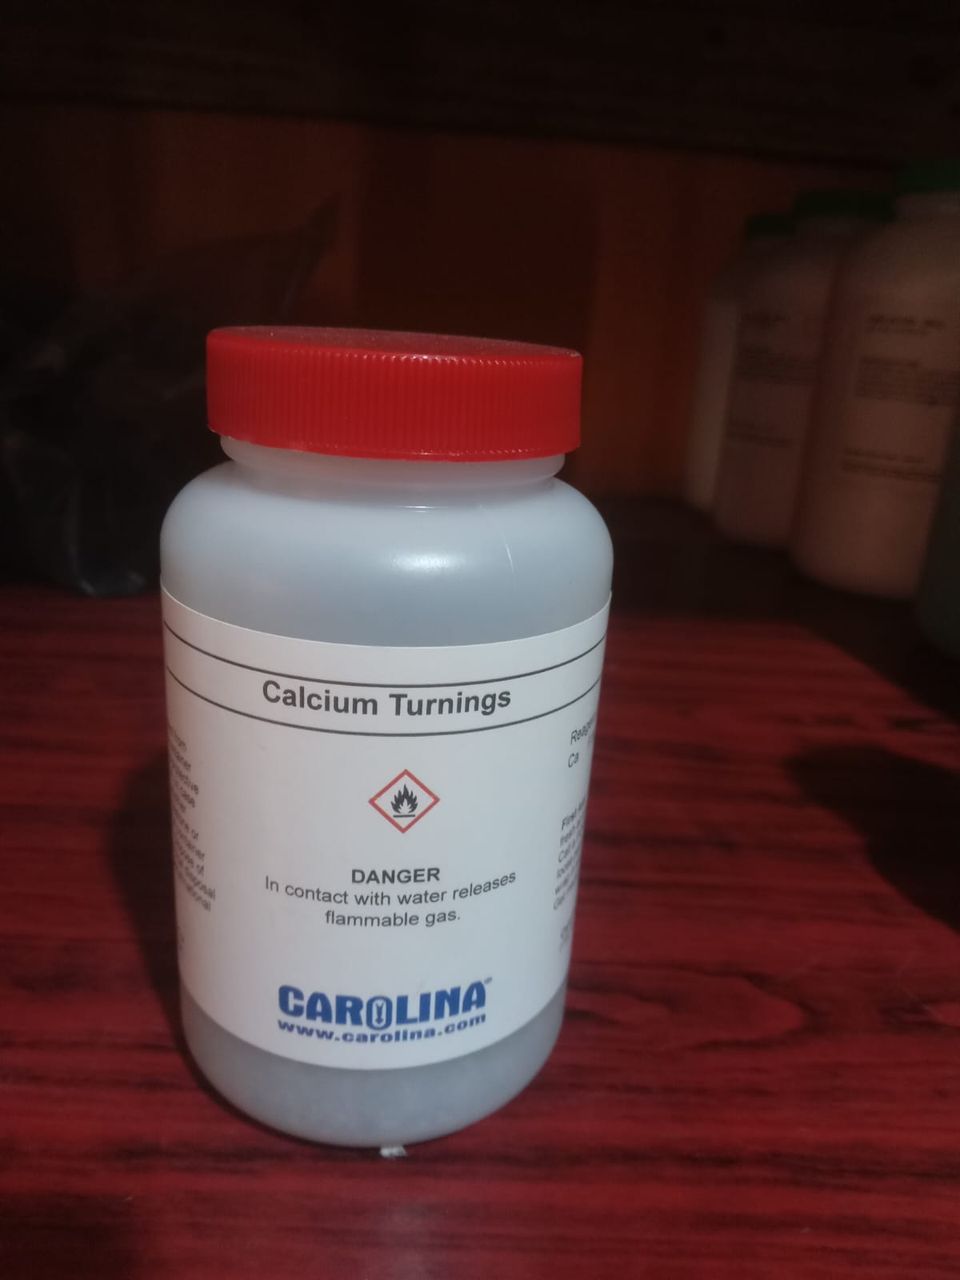 Calcium turnings